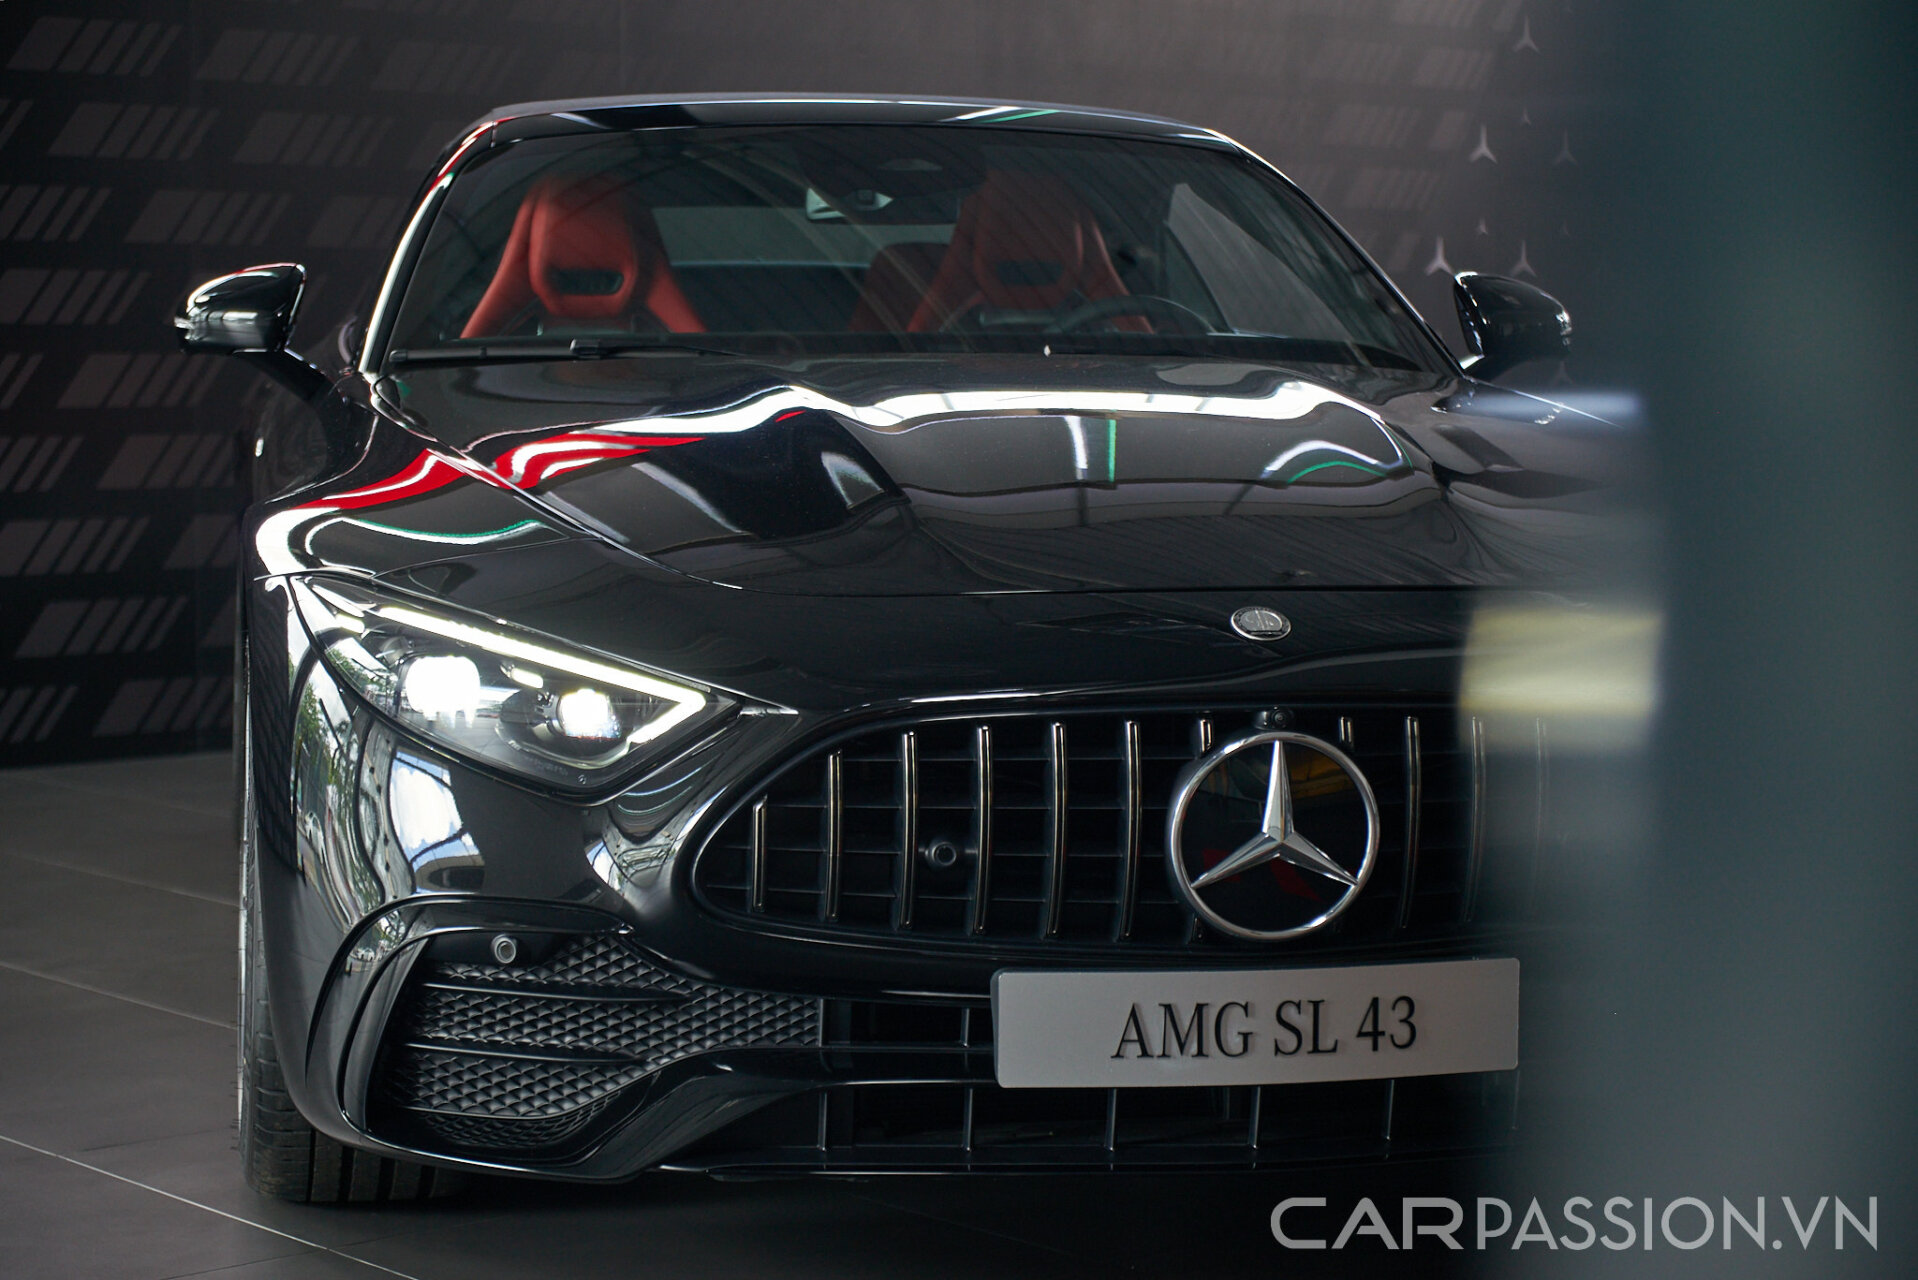 Cận cảnh Mercedes-AMG SL 43: Biểu tượng xe thể thao mui trần, mức giá gần 7 tỷ đồng "đấu" Porsche 911